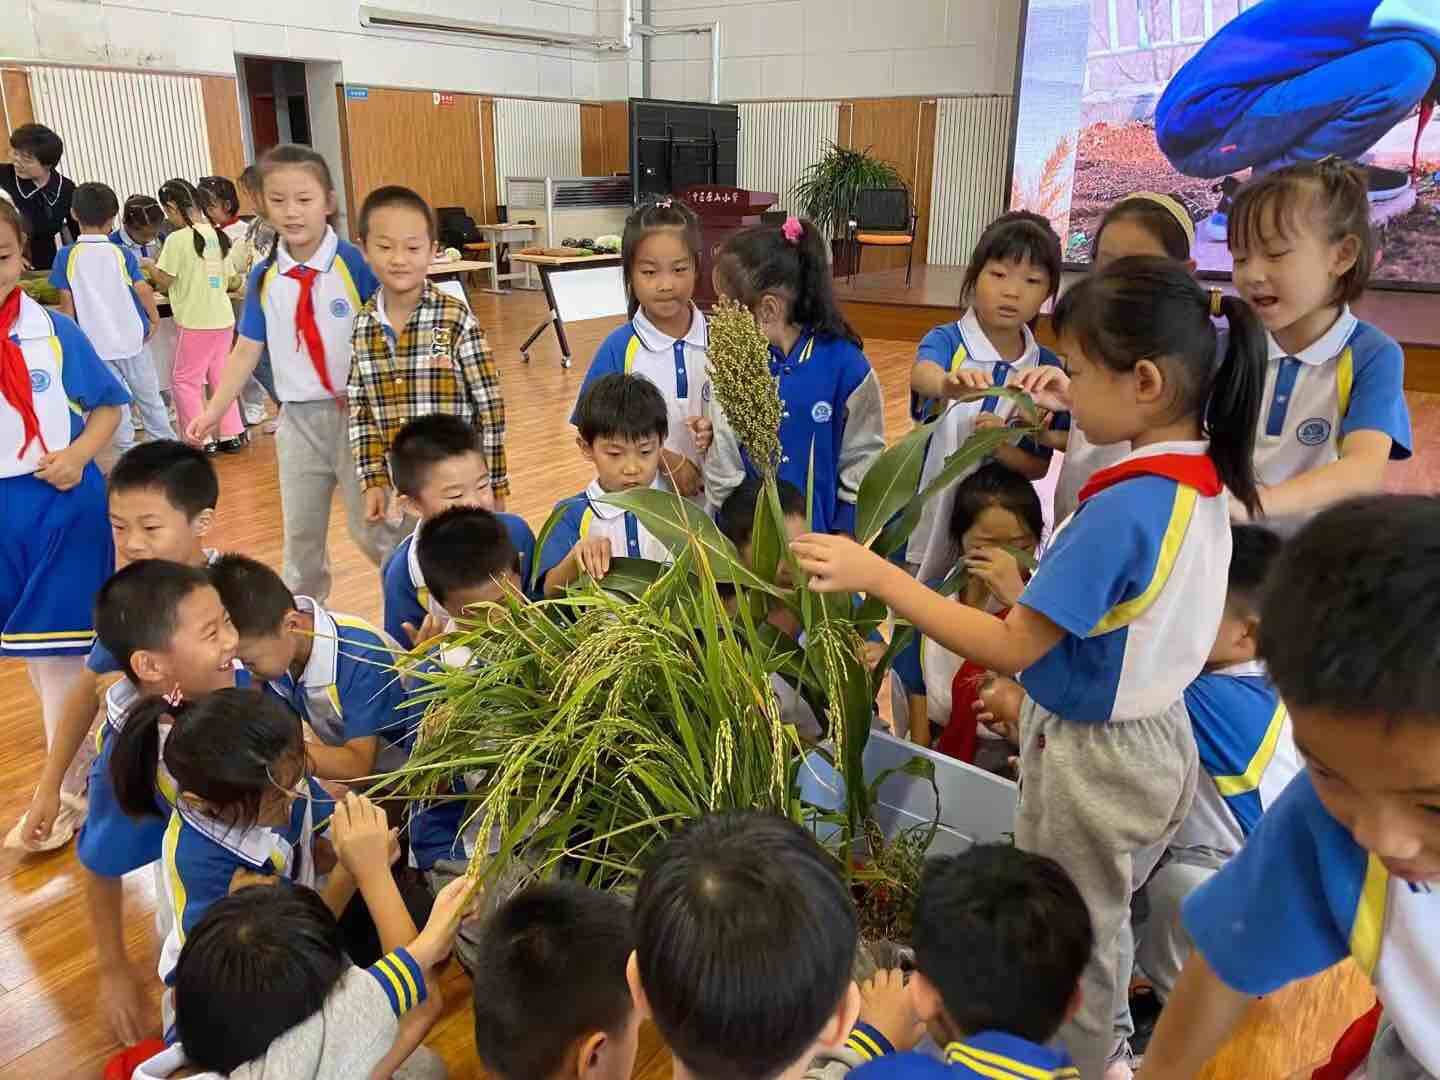 选购蔬菜、撒下种子……济南市中区原山小学首届“丰收节”活动成功举办